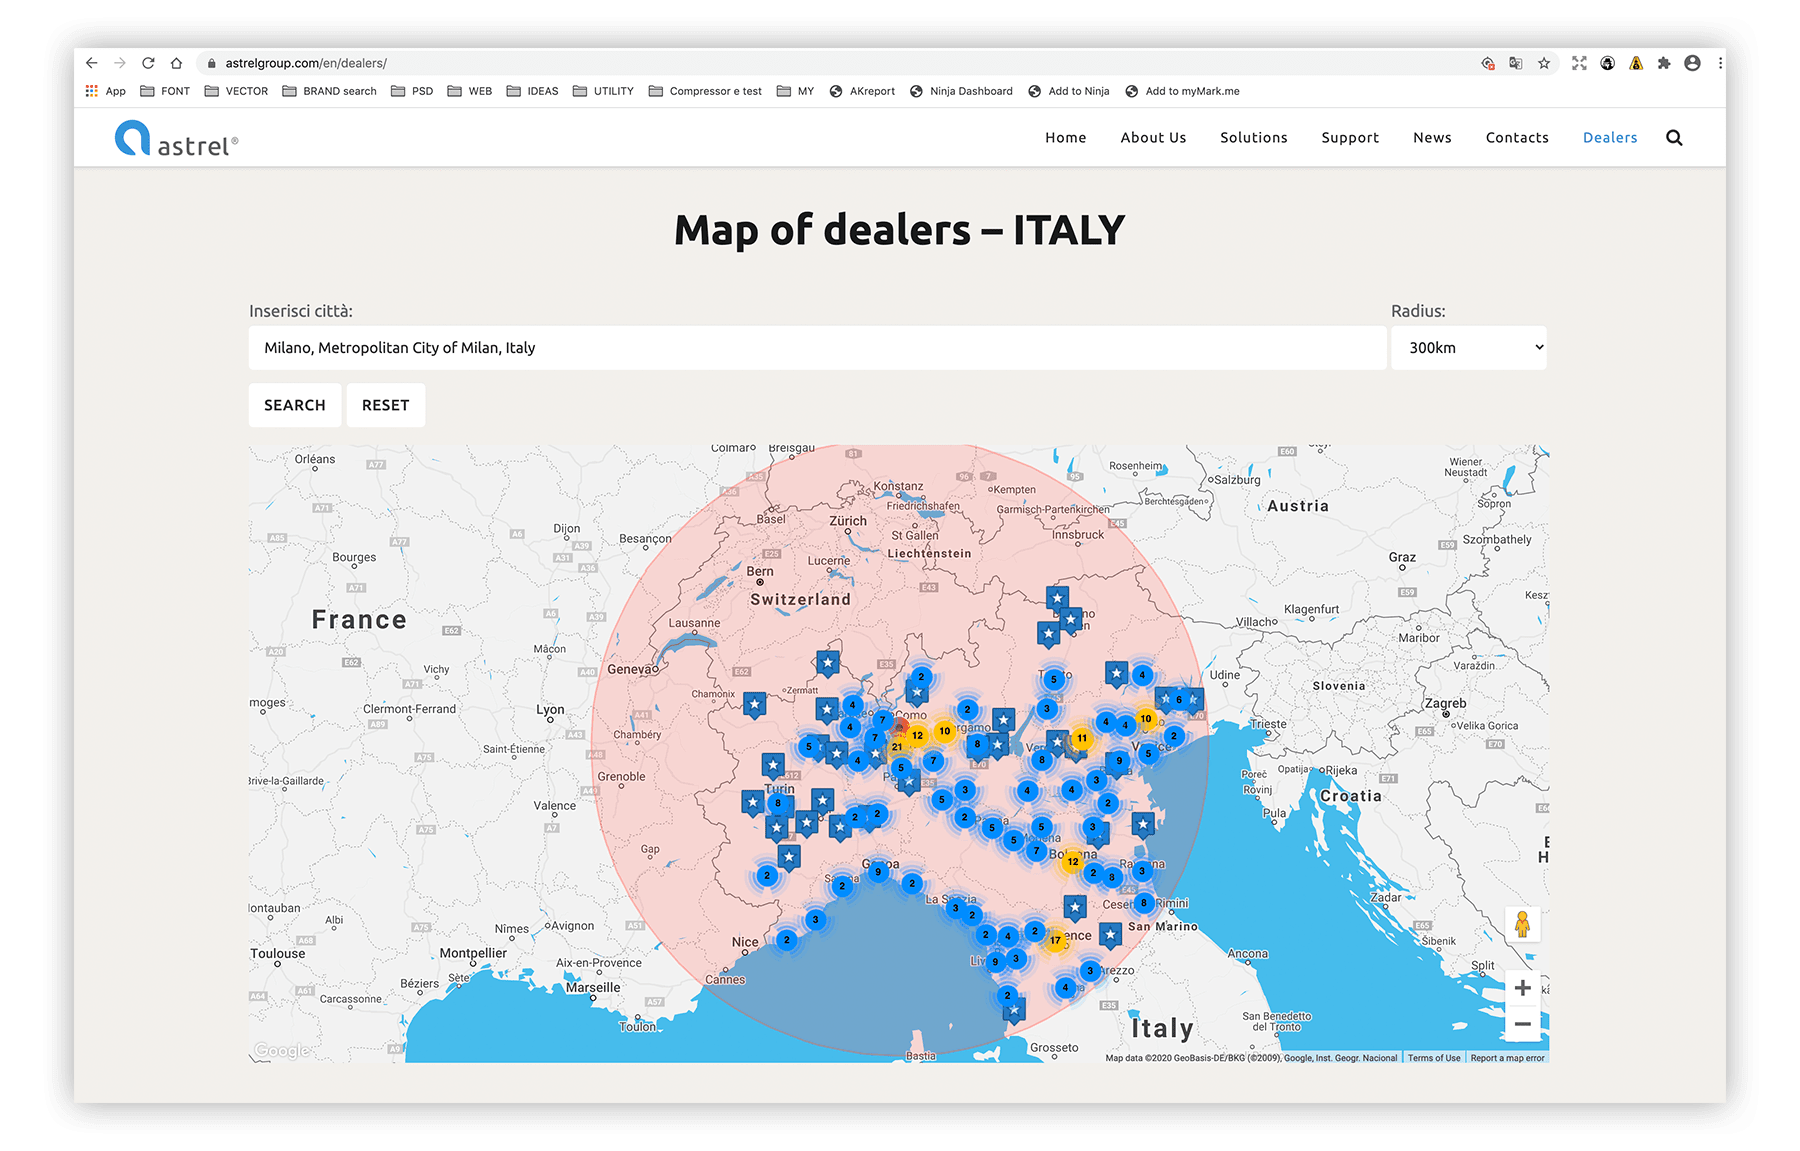 Pagina Mappa Rivenditori sito Astrel - Neroavorio (Padova)